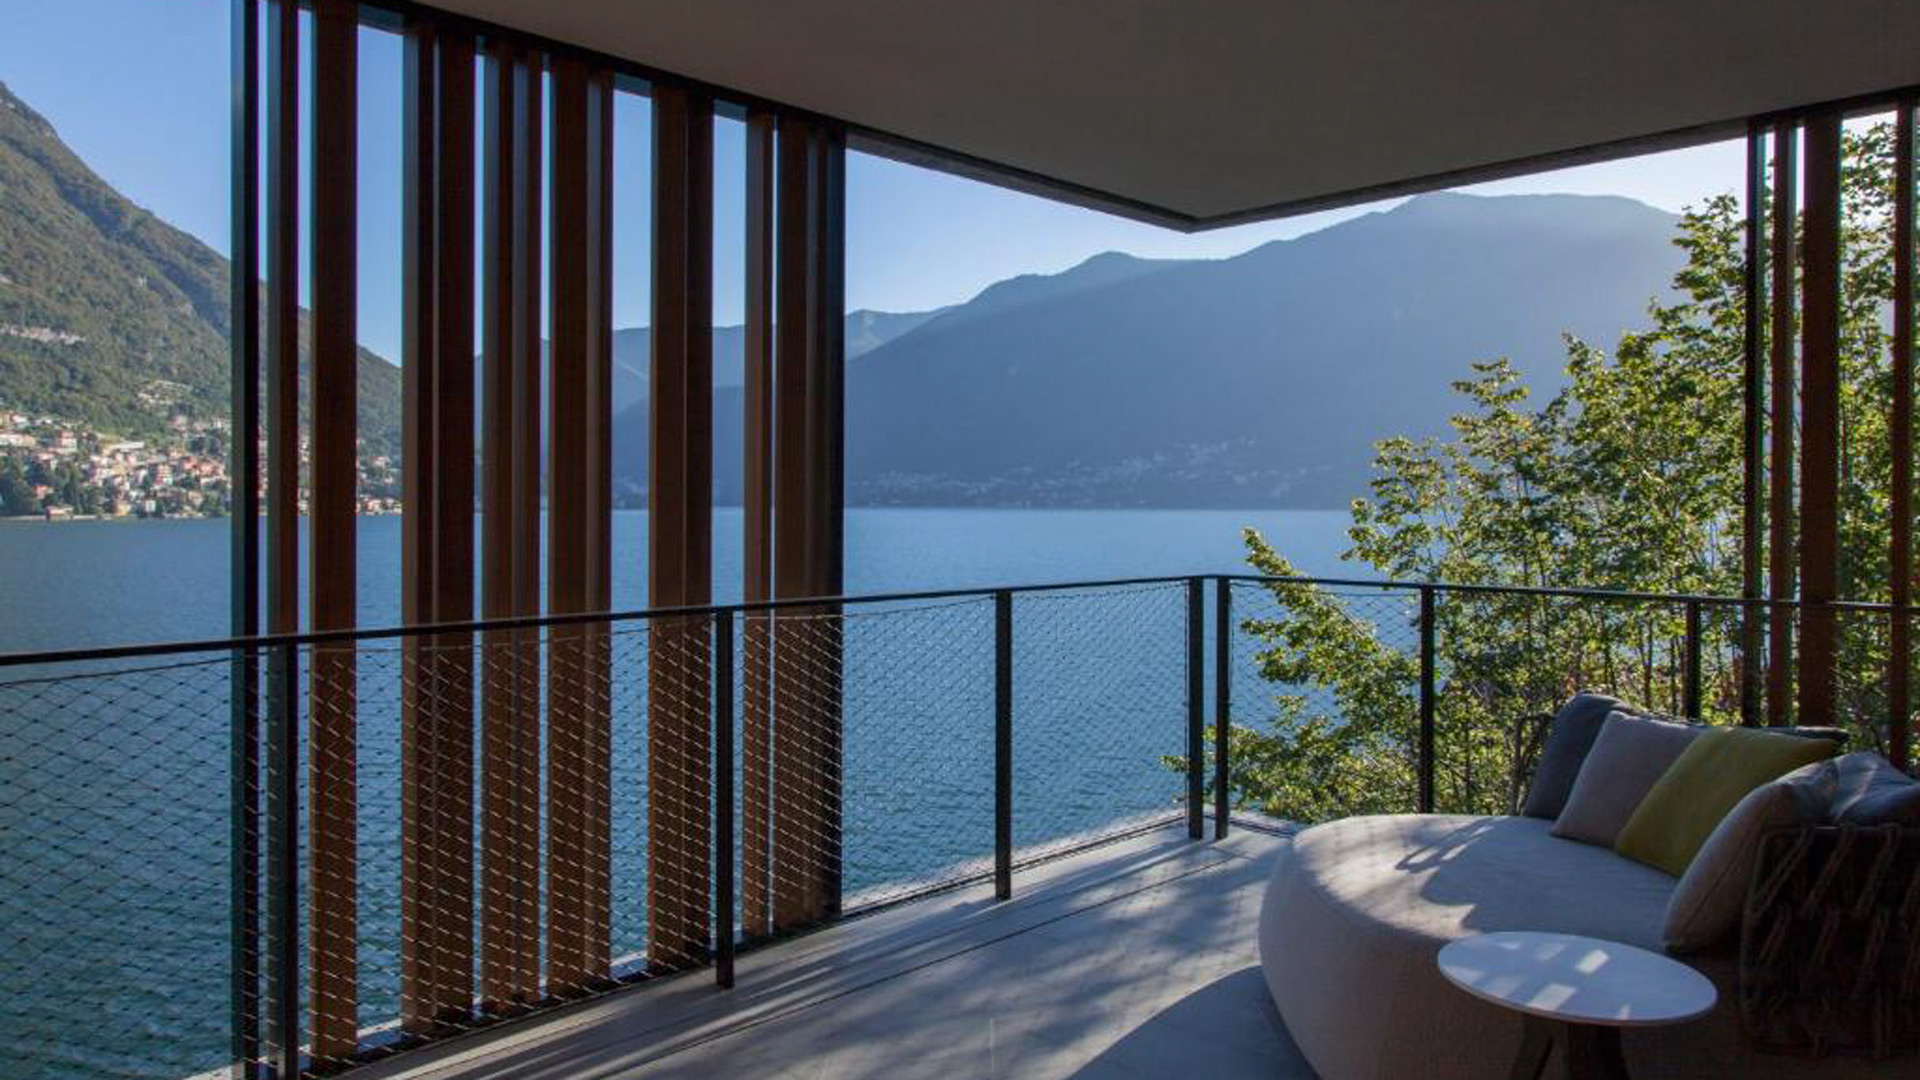 Conheça as melhores opções para se hospedar no Lago de Como